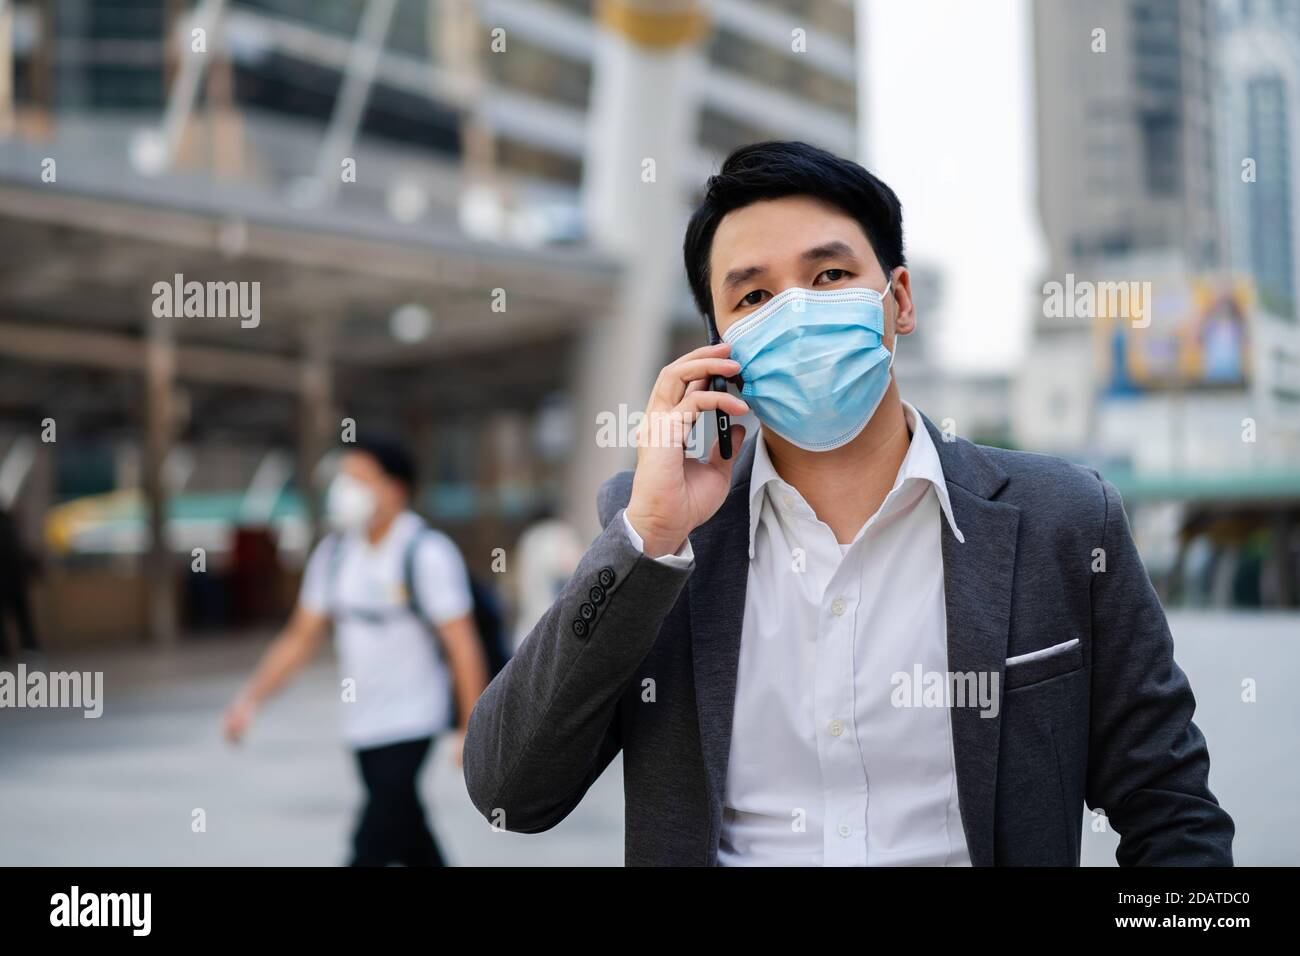 Geschäftsmann, der mit dem Handy spricht und eine medizinische Maske trägt Während Coronavirus (covid-19) Pandemie in der Stadt Stockfoto